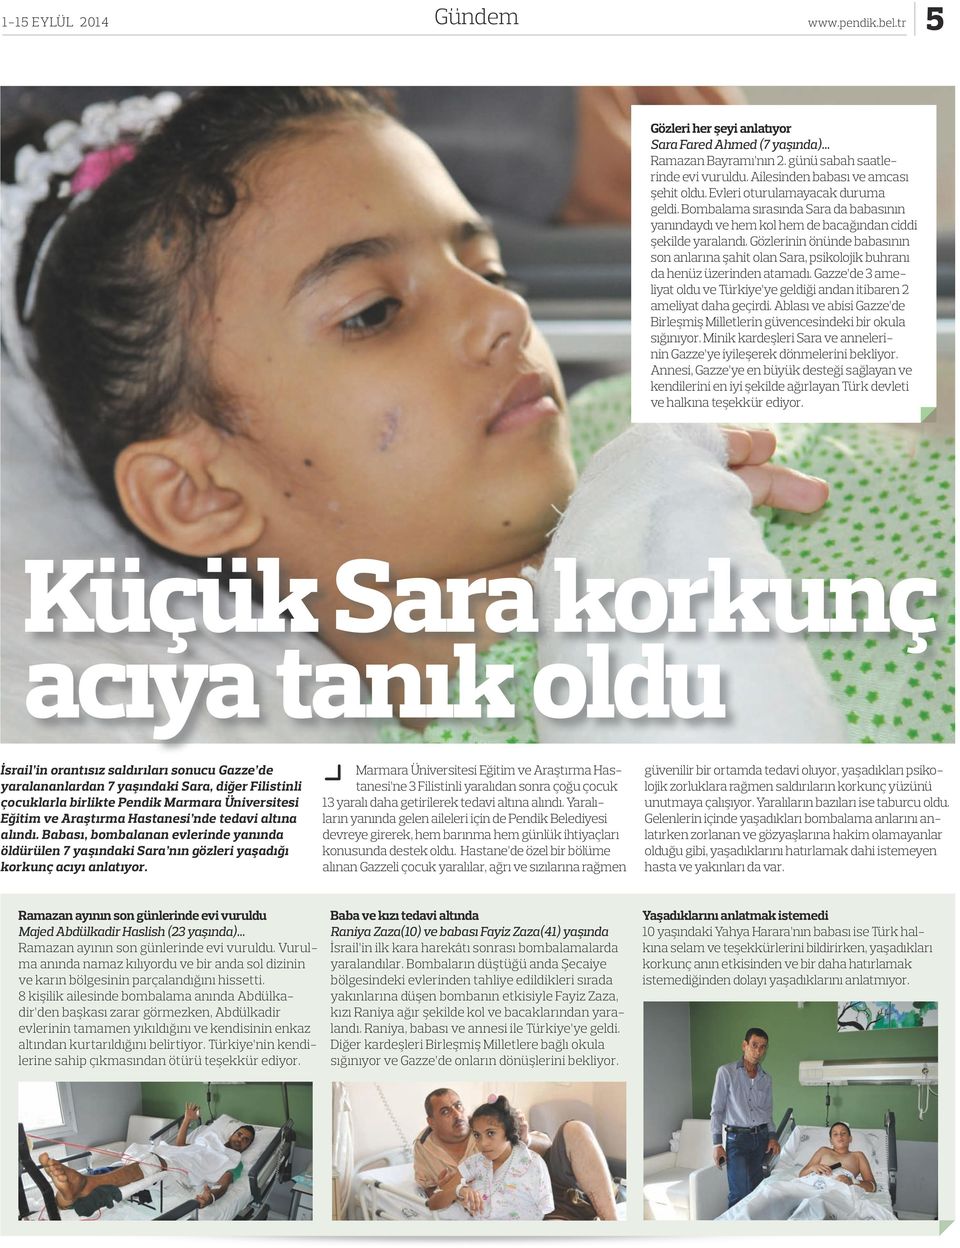 Gözlerinin önünde babasının son anlarına şahit olan Sara, psikolojik buhranı da henüz üzerinden atamadı. Gazze de 3 ameliyat oldu ve Türkiye ye geldiği andan itibaren 2 ameliyat daha geçirdi.